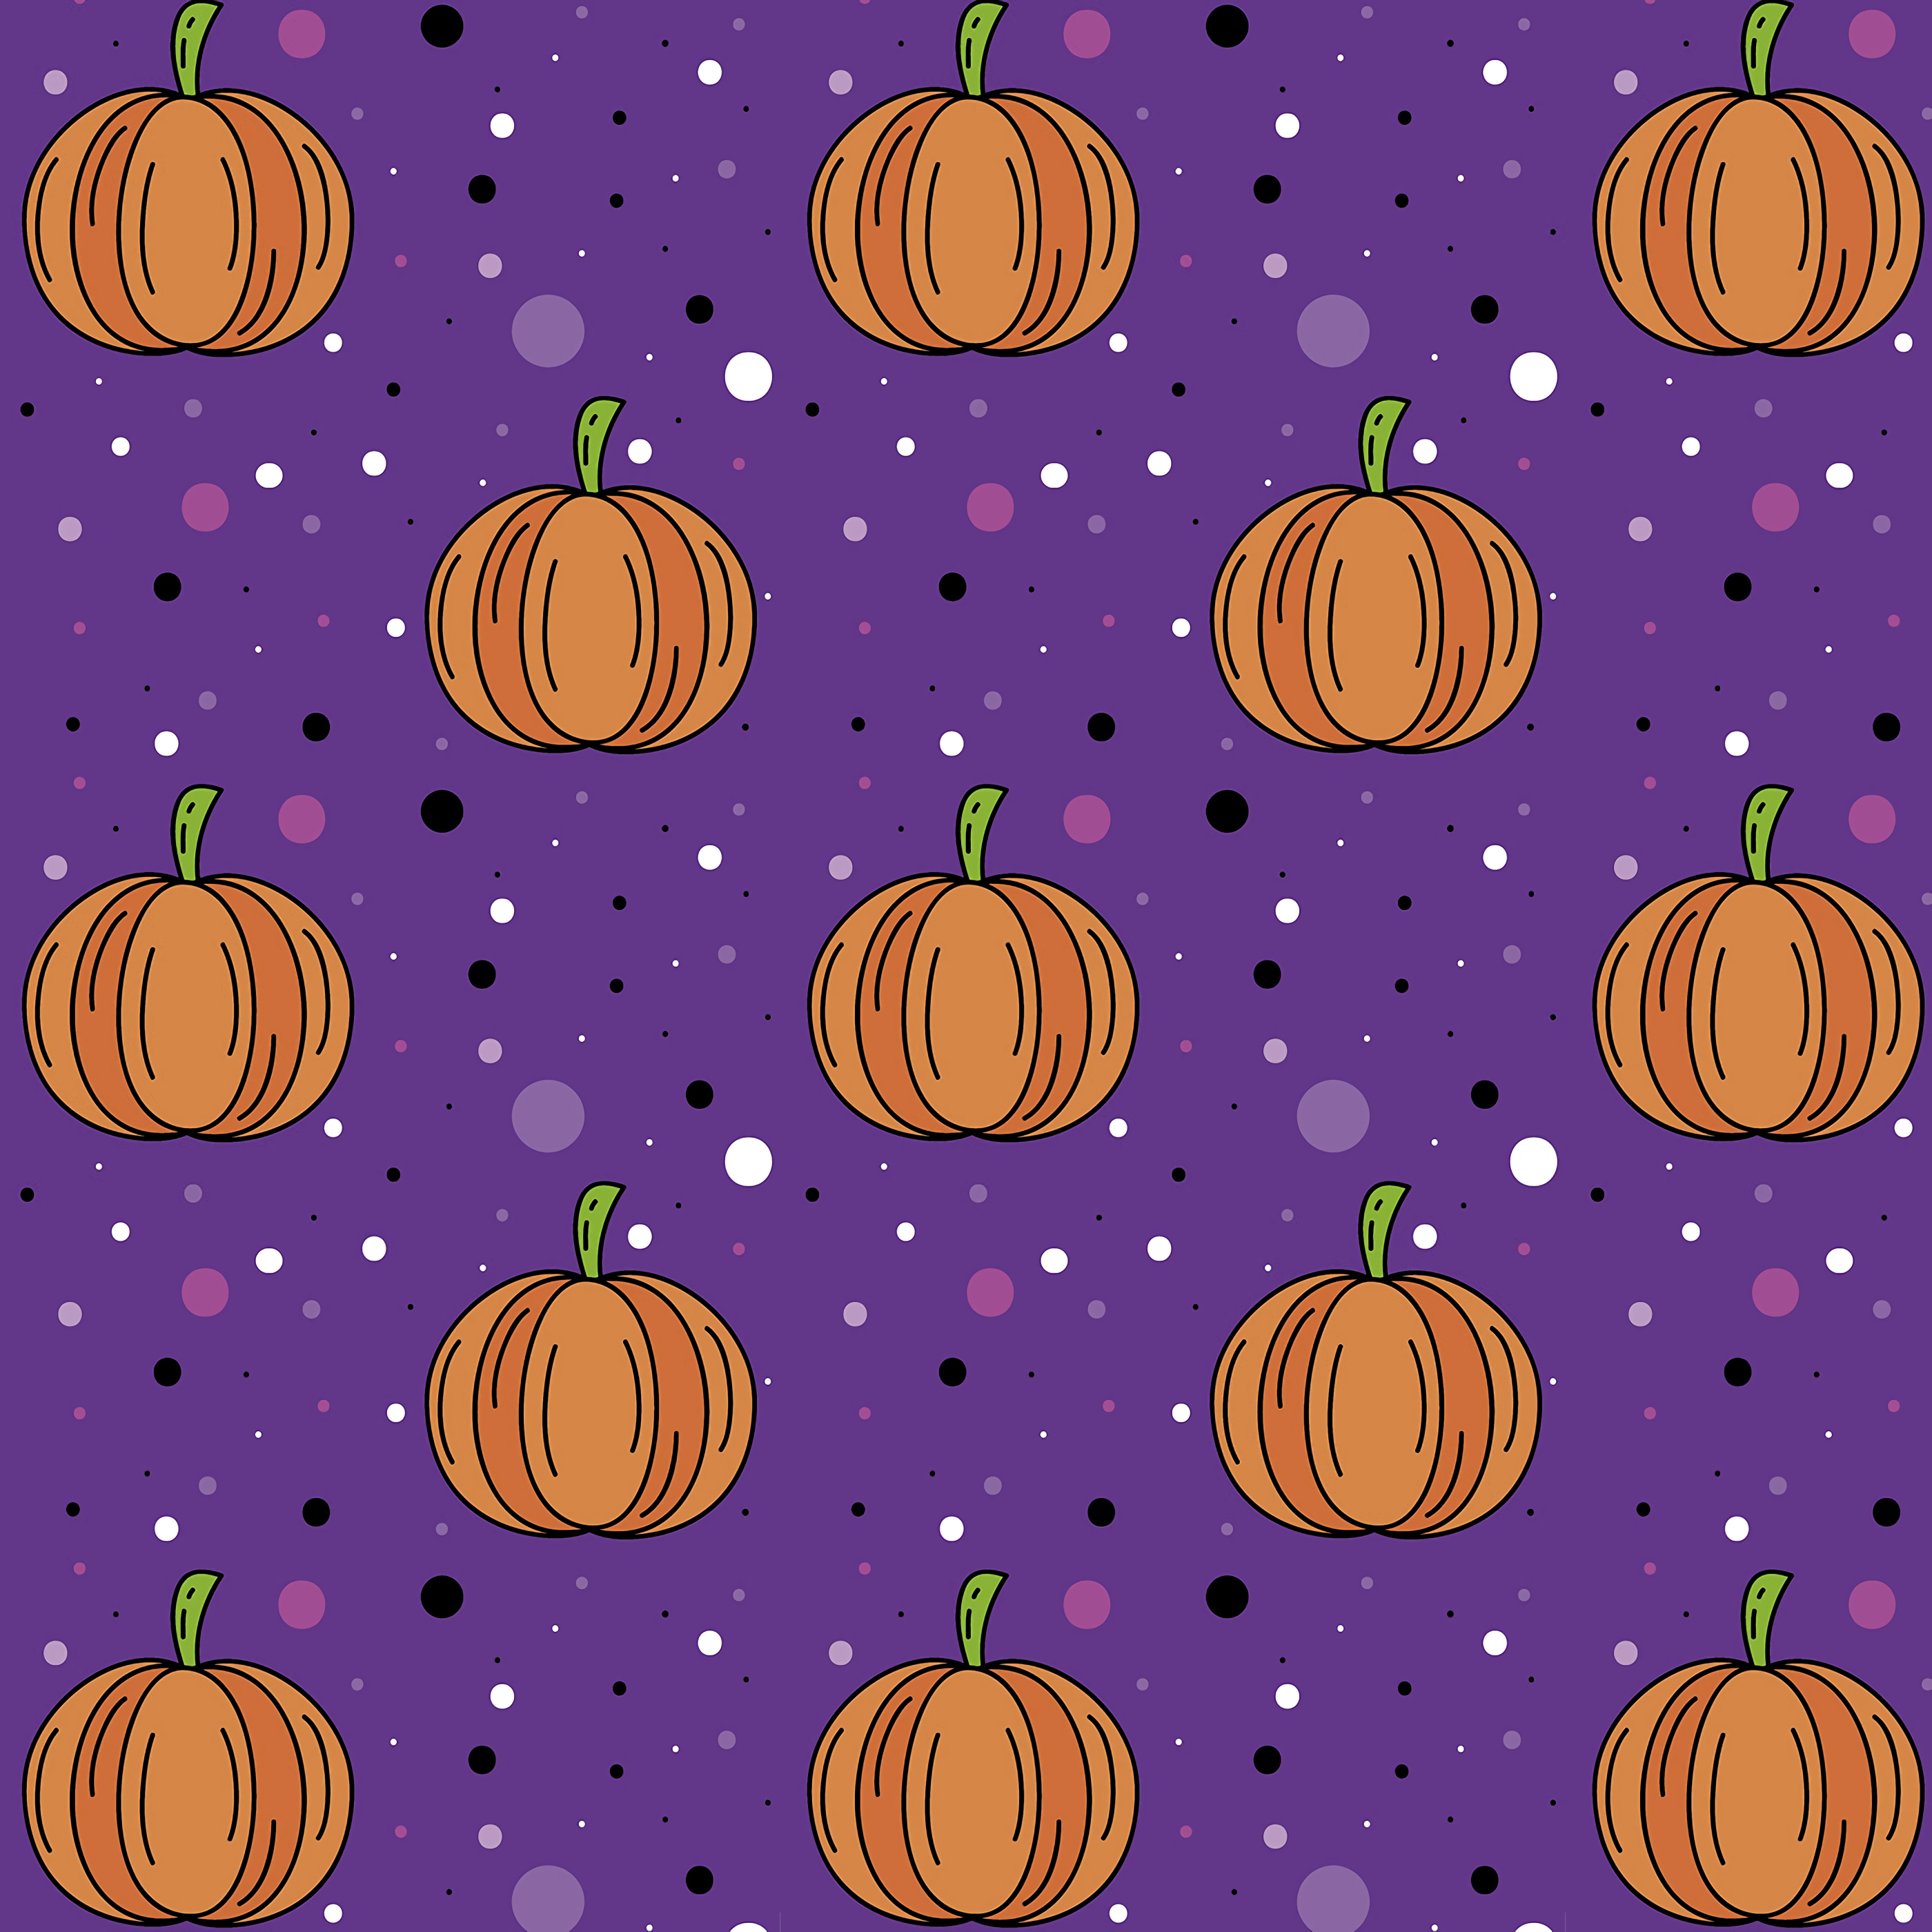 32k Pumpkin Wallpaper